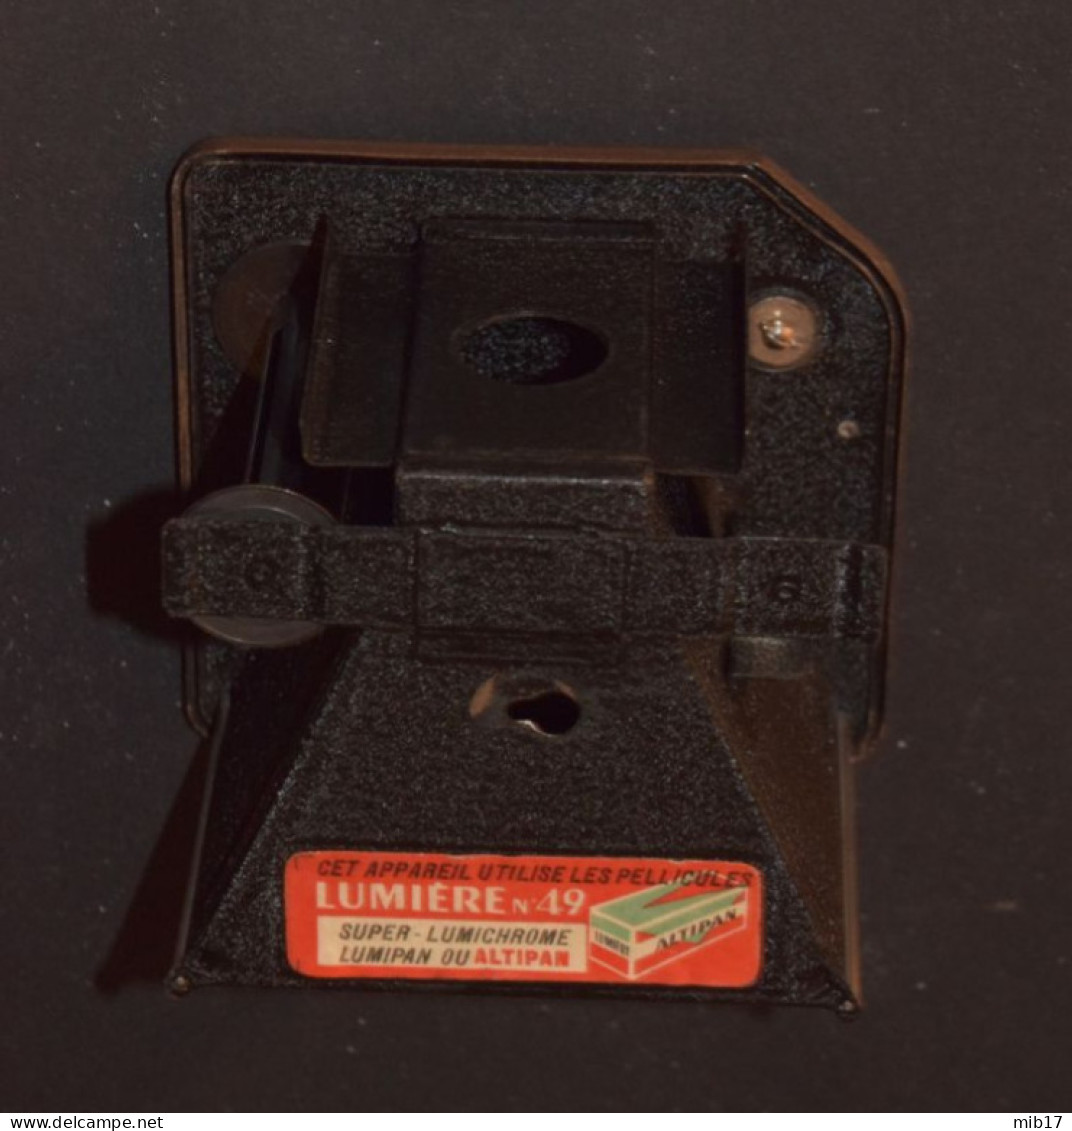 ancien appareil photo LUMIERE lux box